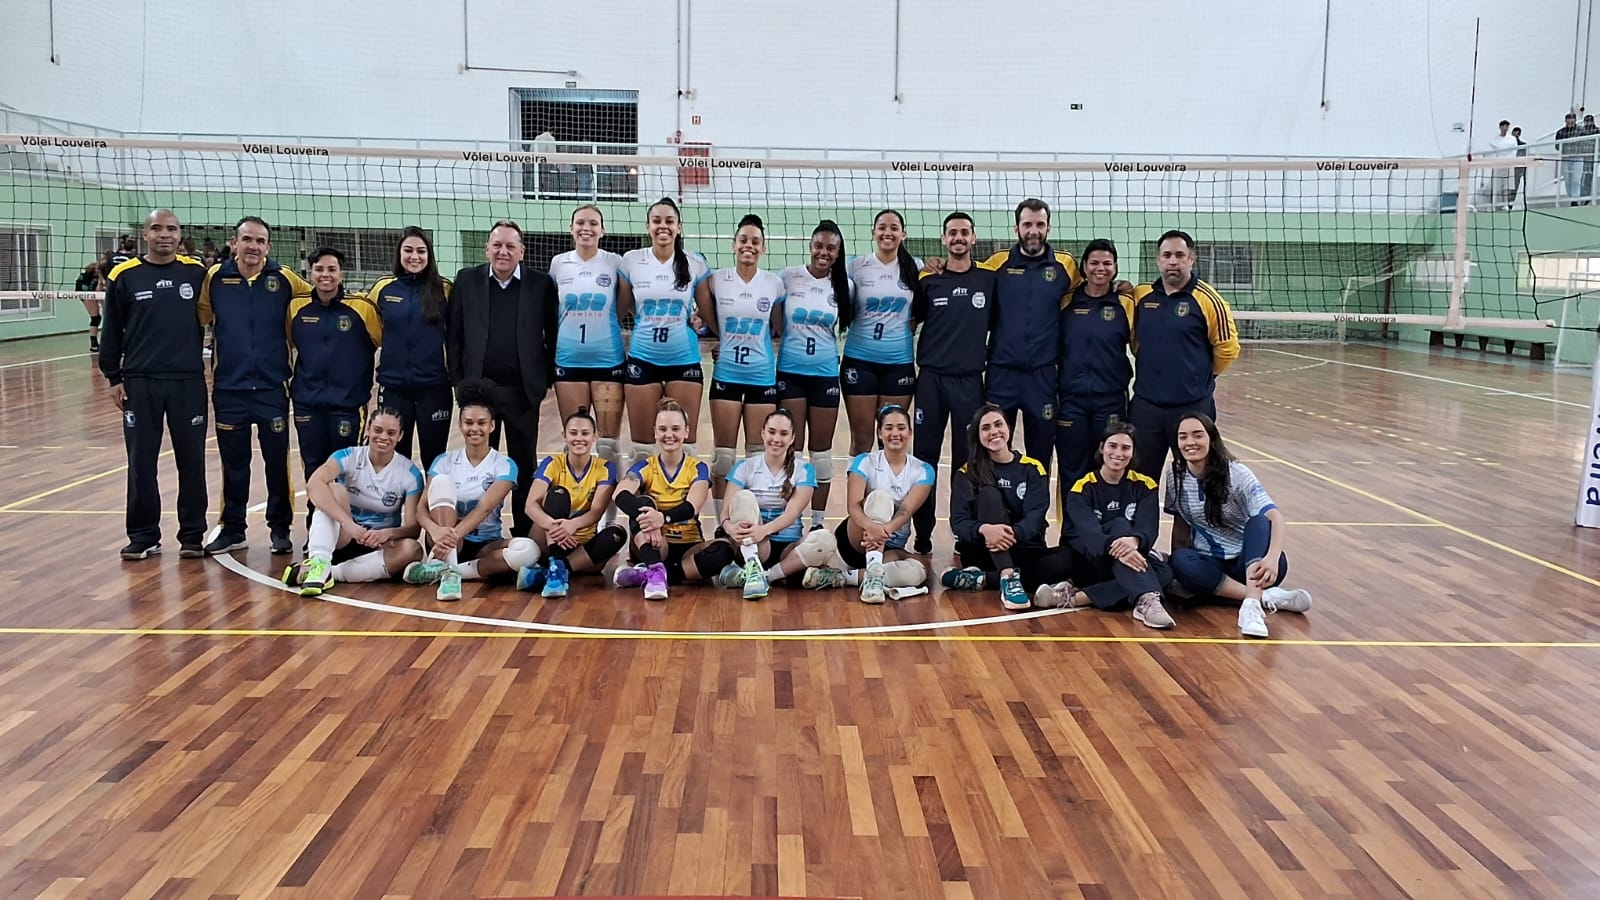 VAMOS TORCER- Louveira estreia no Paulista de vôlei feminino nesta